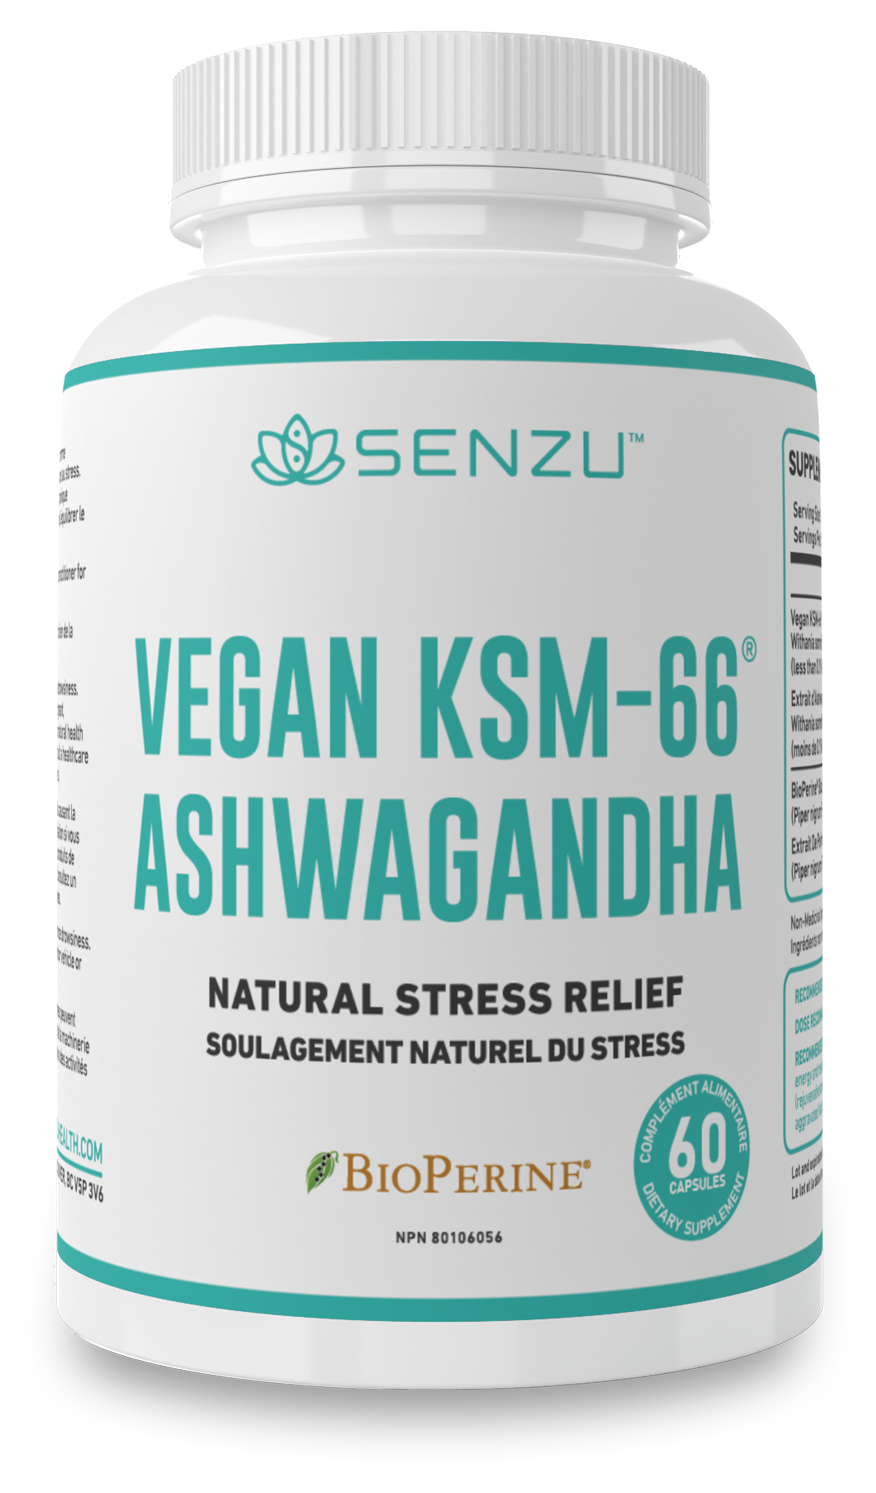 Vegan KSM-66 Ashwagandha